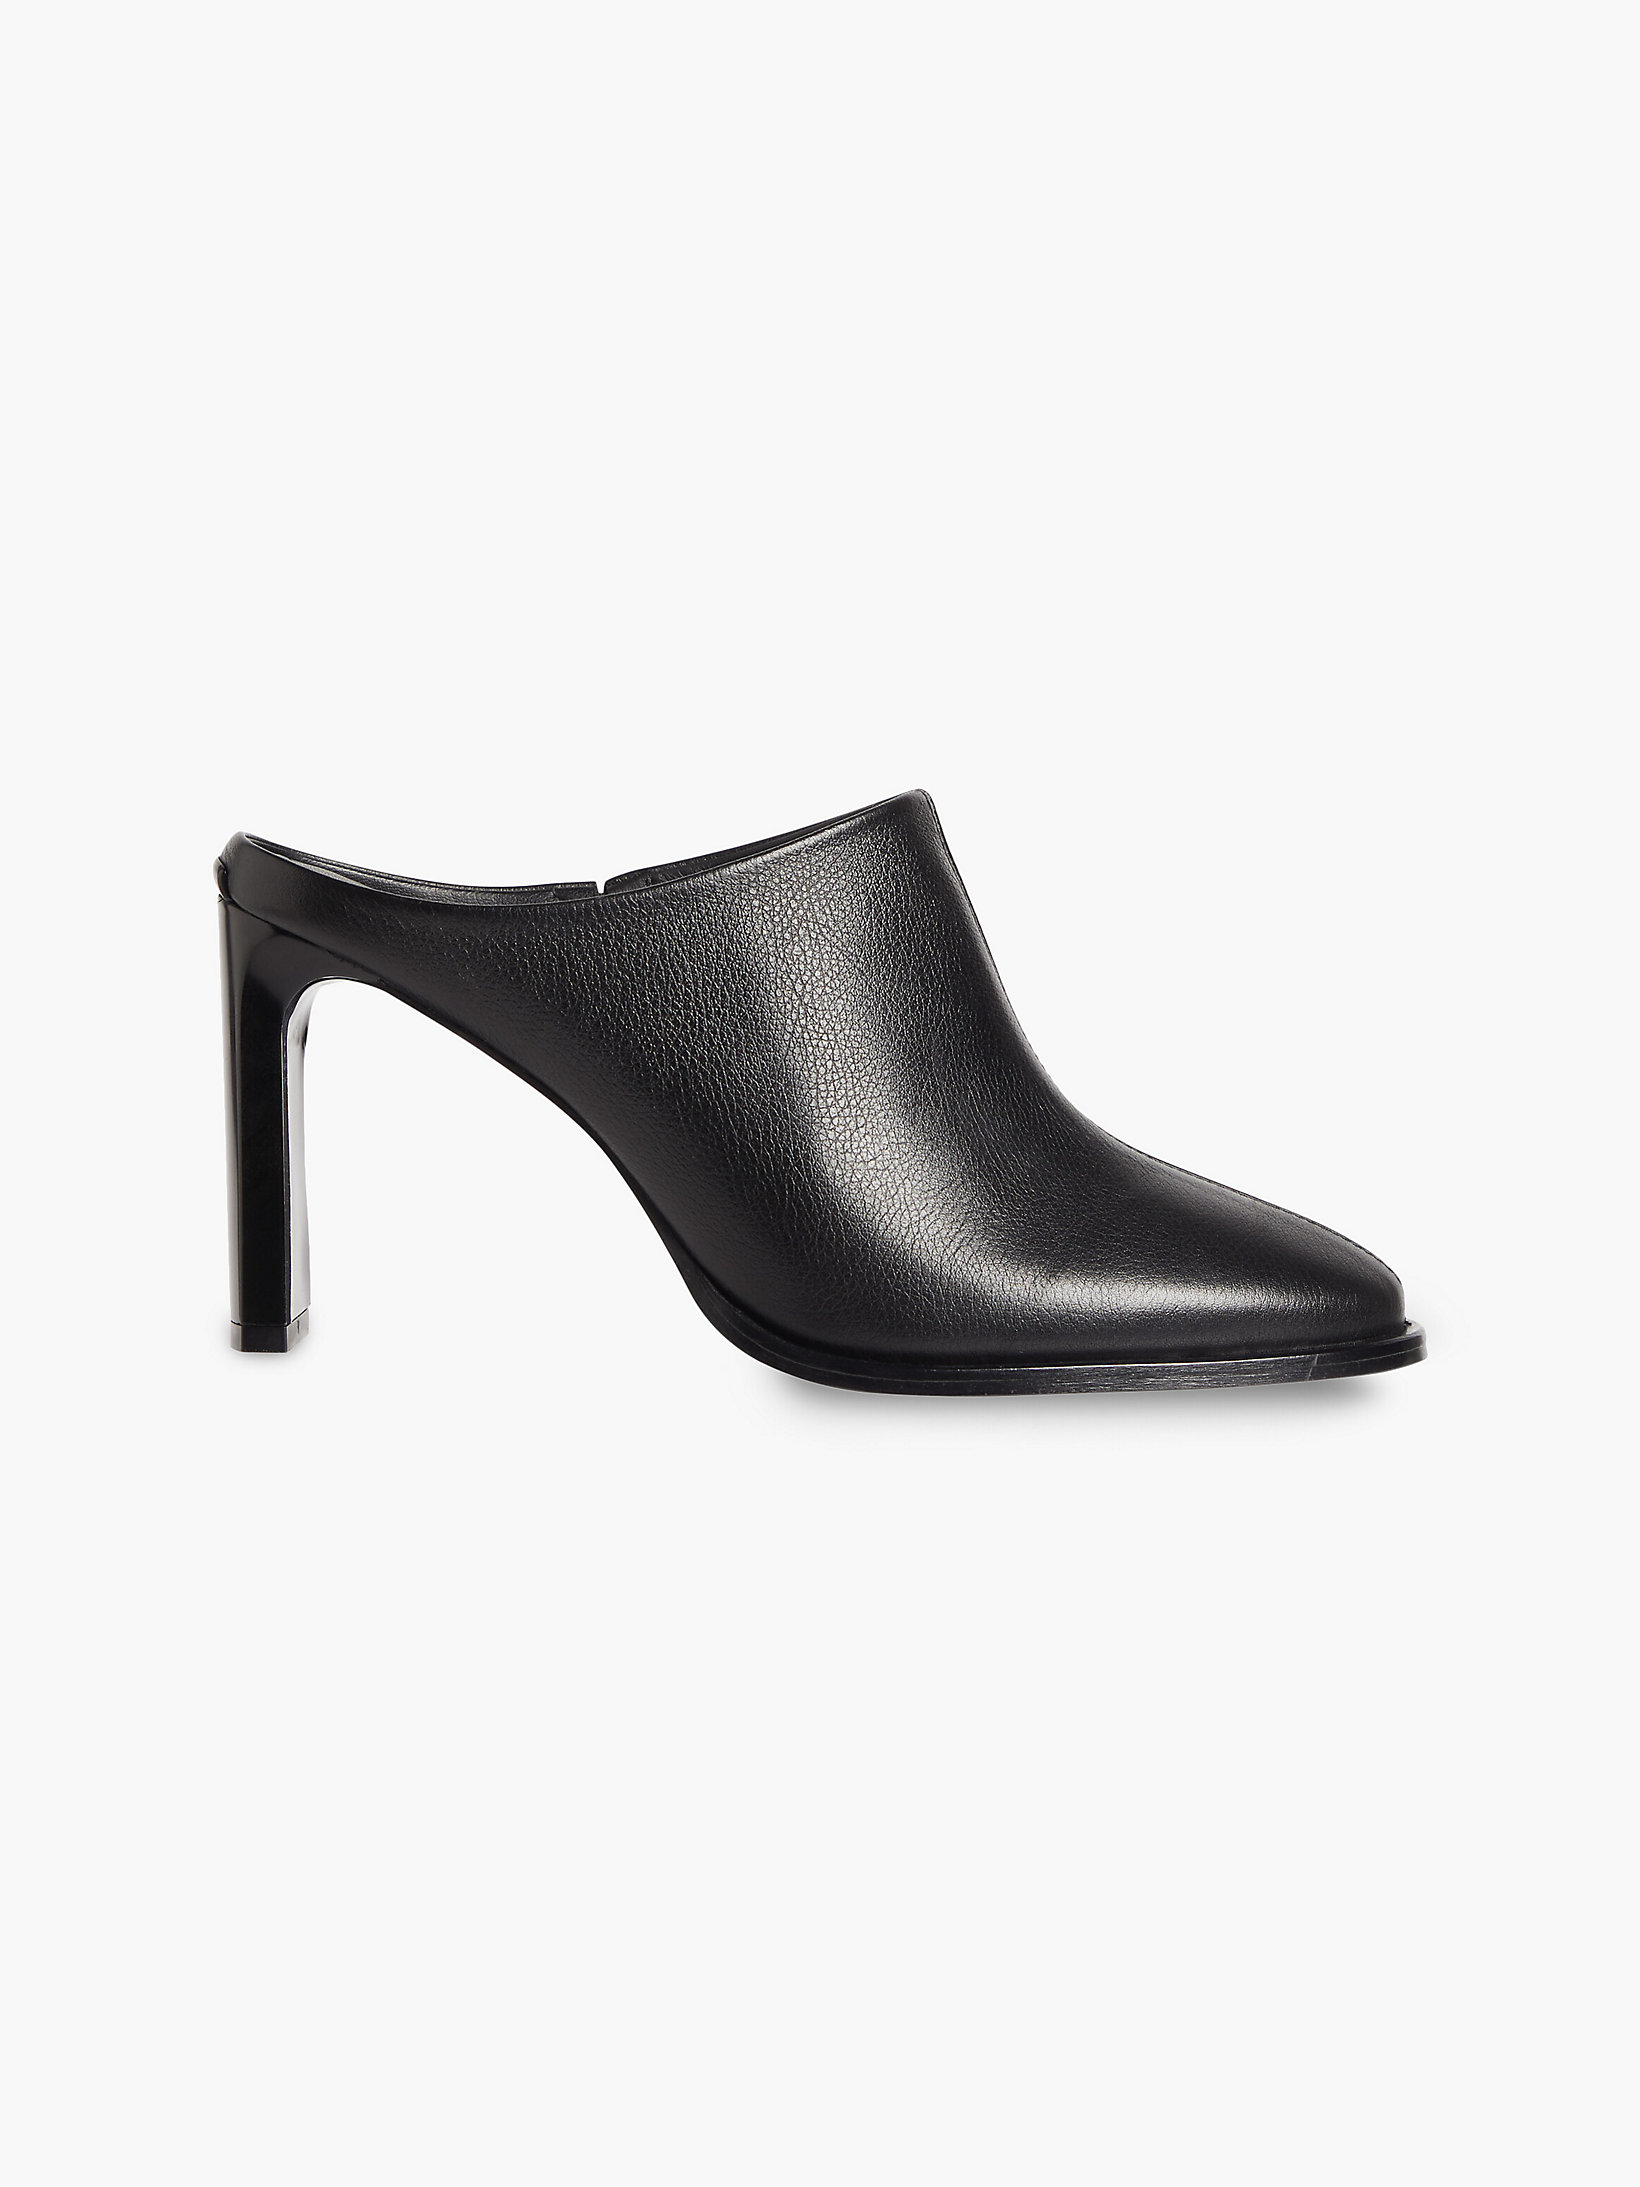 CK Black > Кожаные мюли на каблуках > undefined Женщины - Calvin Klein